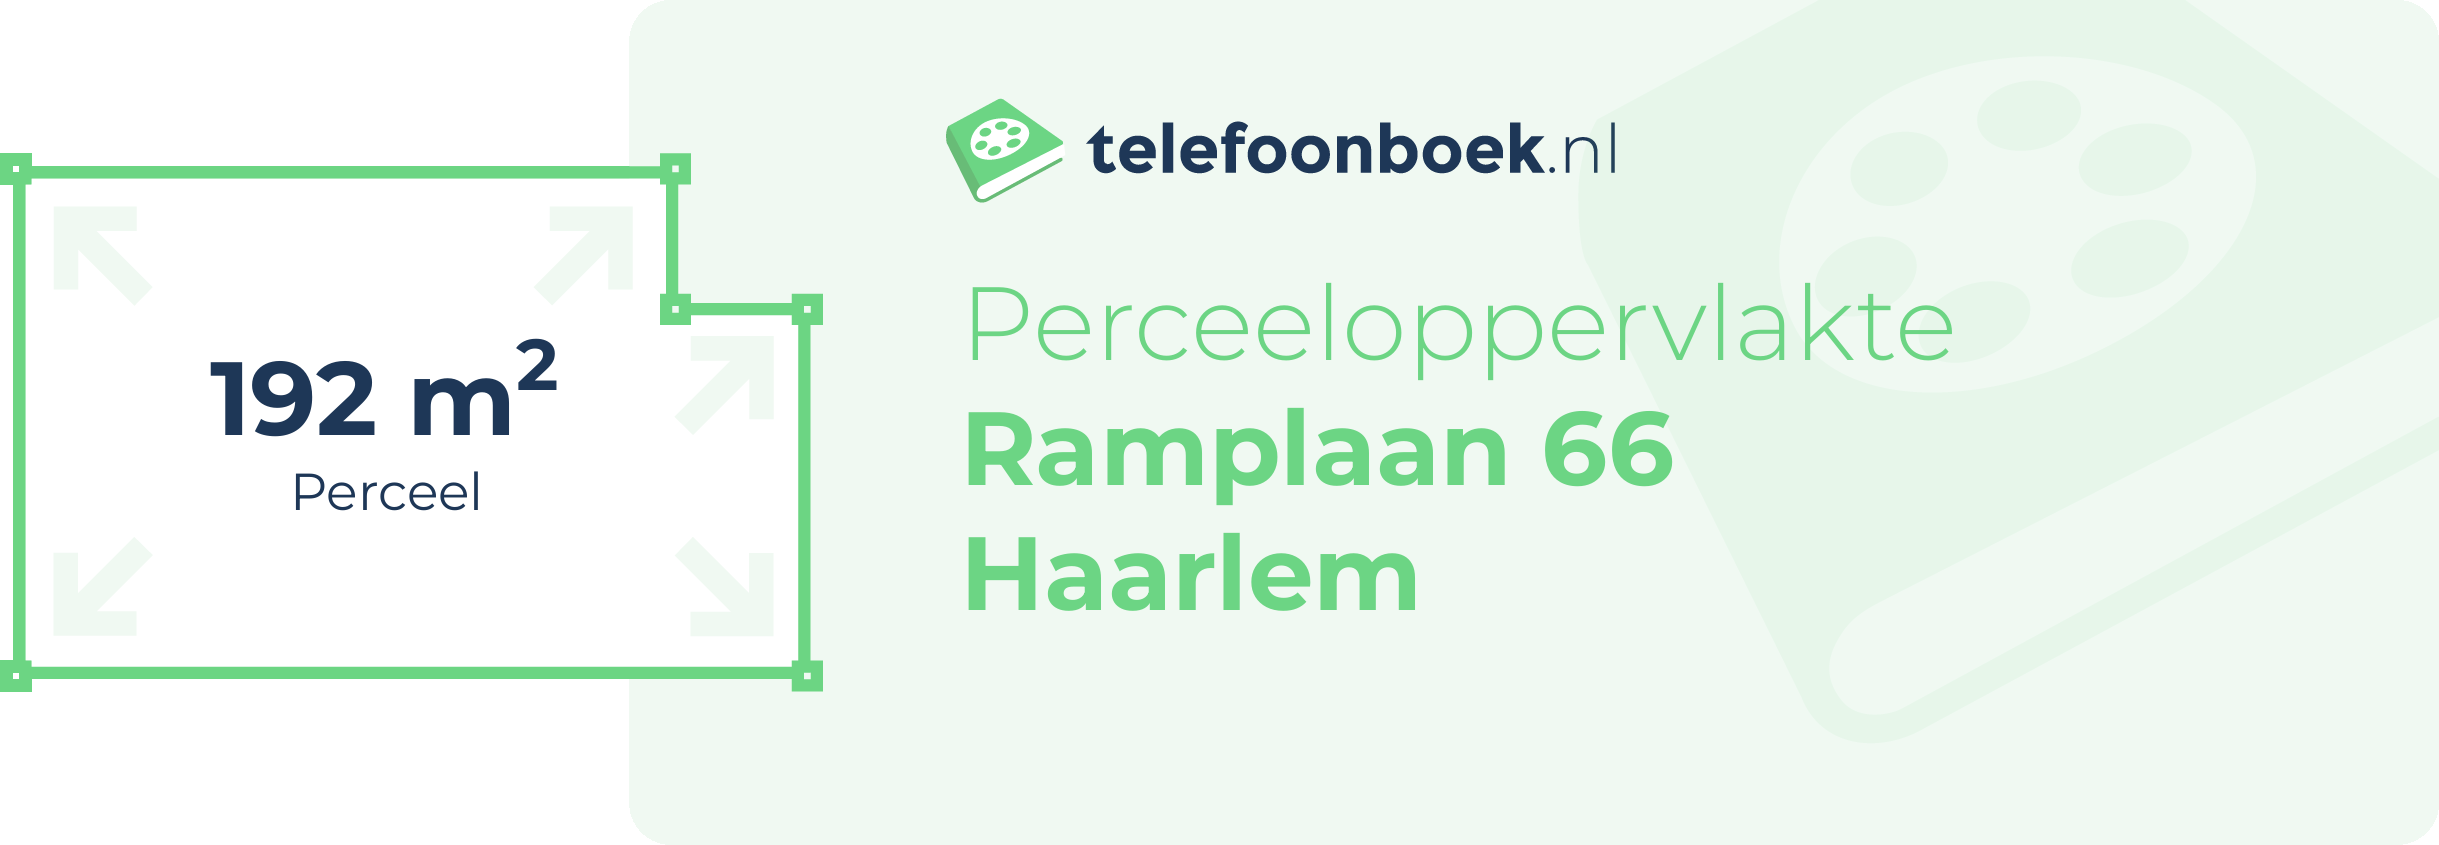 Perceeloppervlakte Ramplaan 66 Haarlem